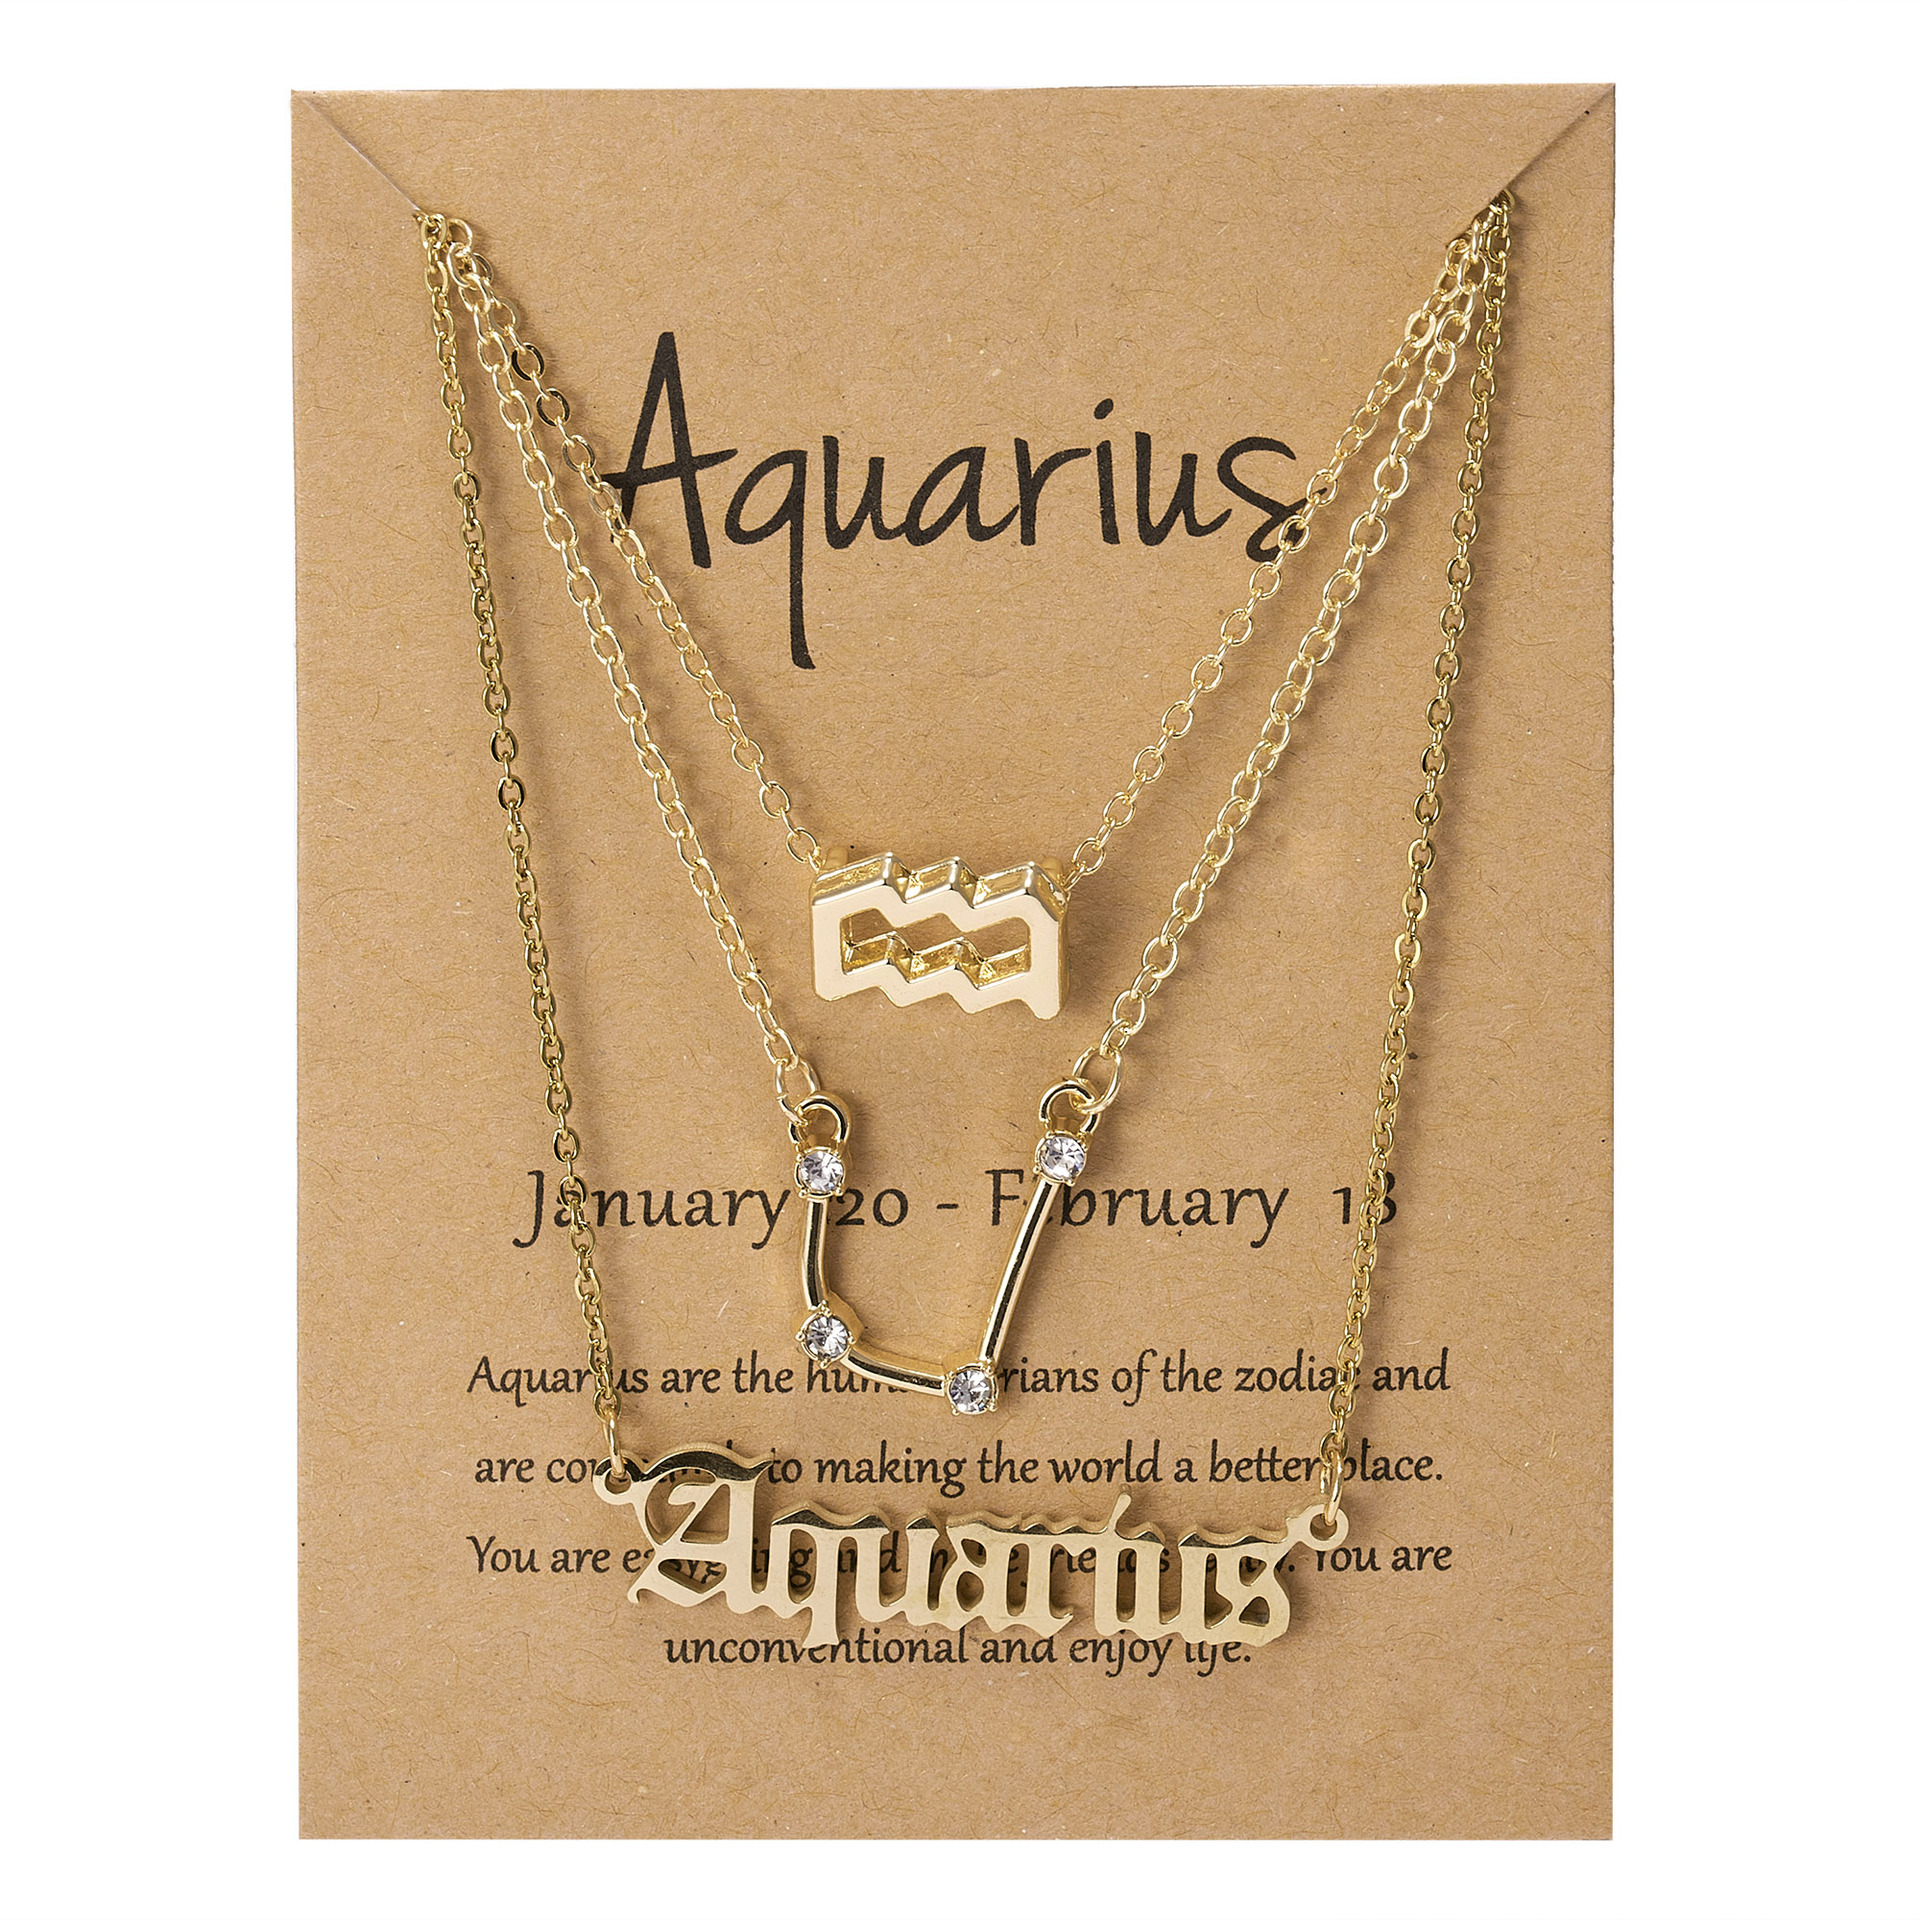 1:Aquarius golden